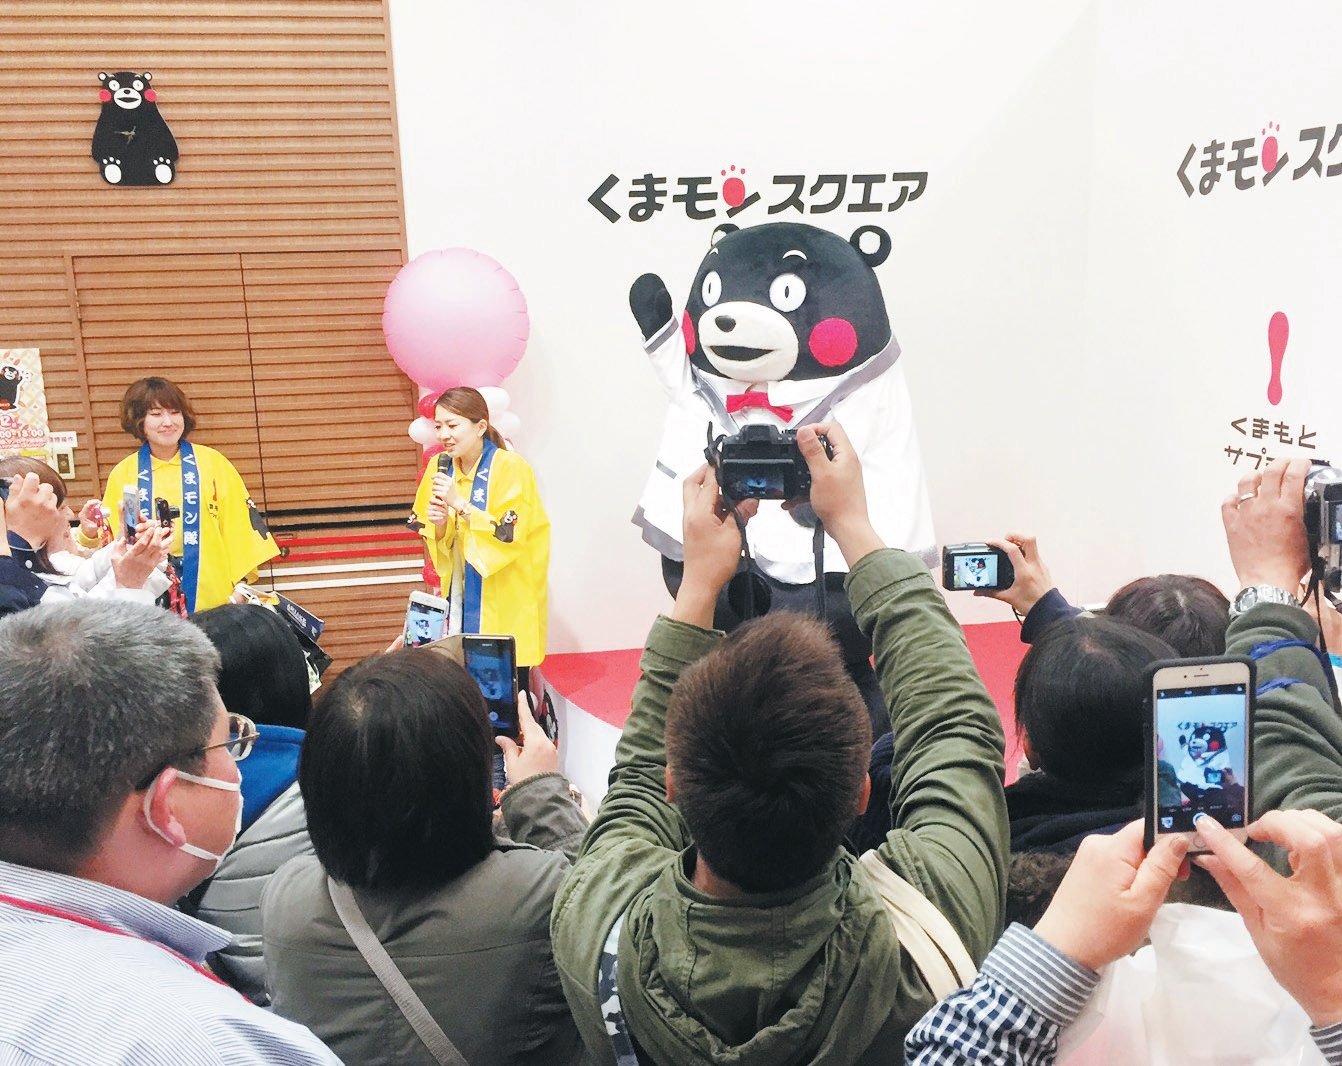 熊本熊部长常常做出可爱的动作，一 出场就会引起粉丝们的喝彩，拿起手 机拍下它的一举一动，而熊本熊也成 为日本境内最成功的吉祥物。